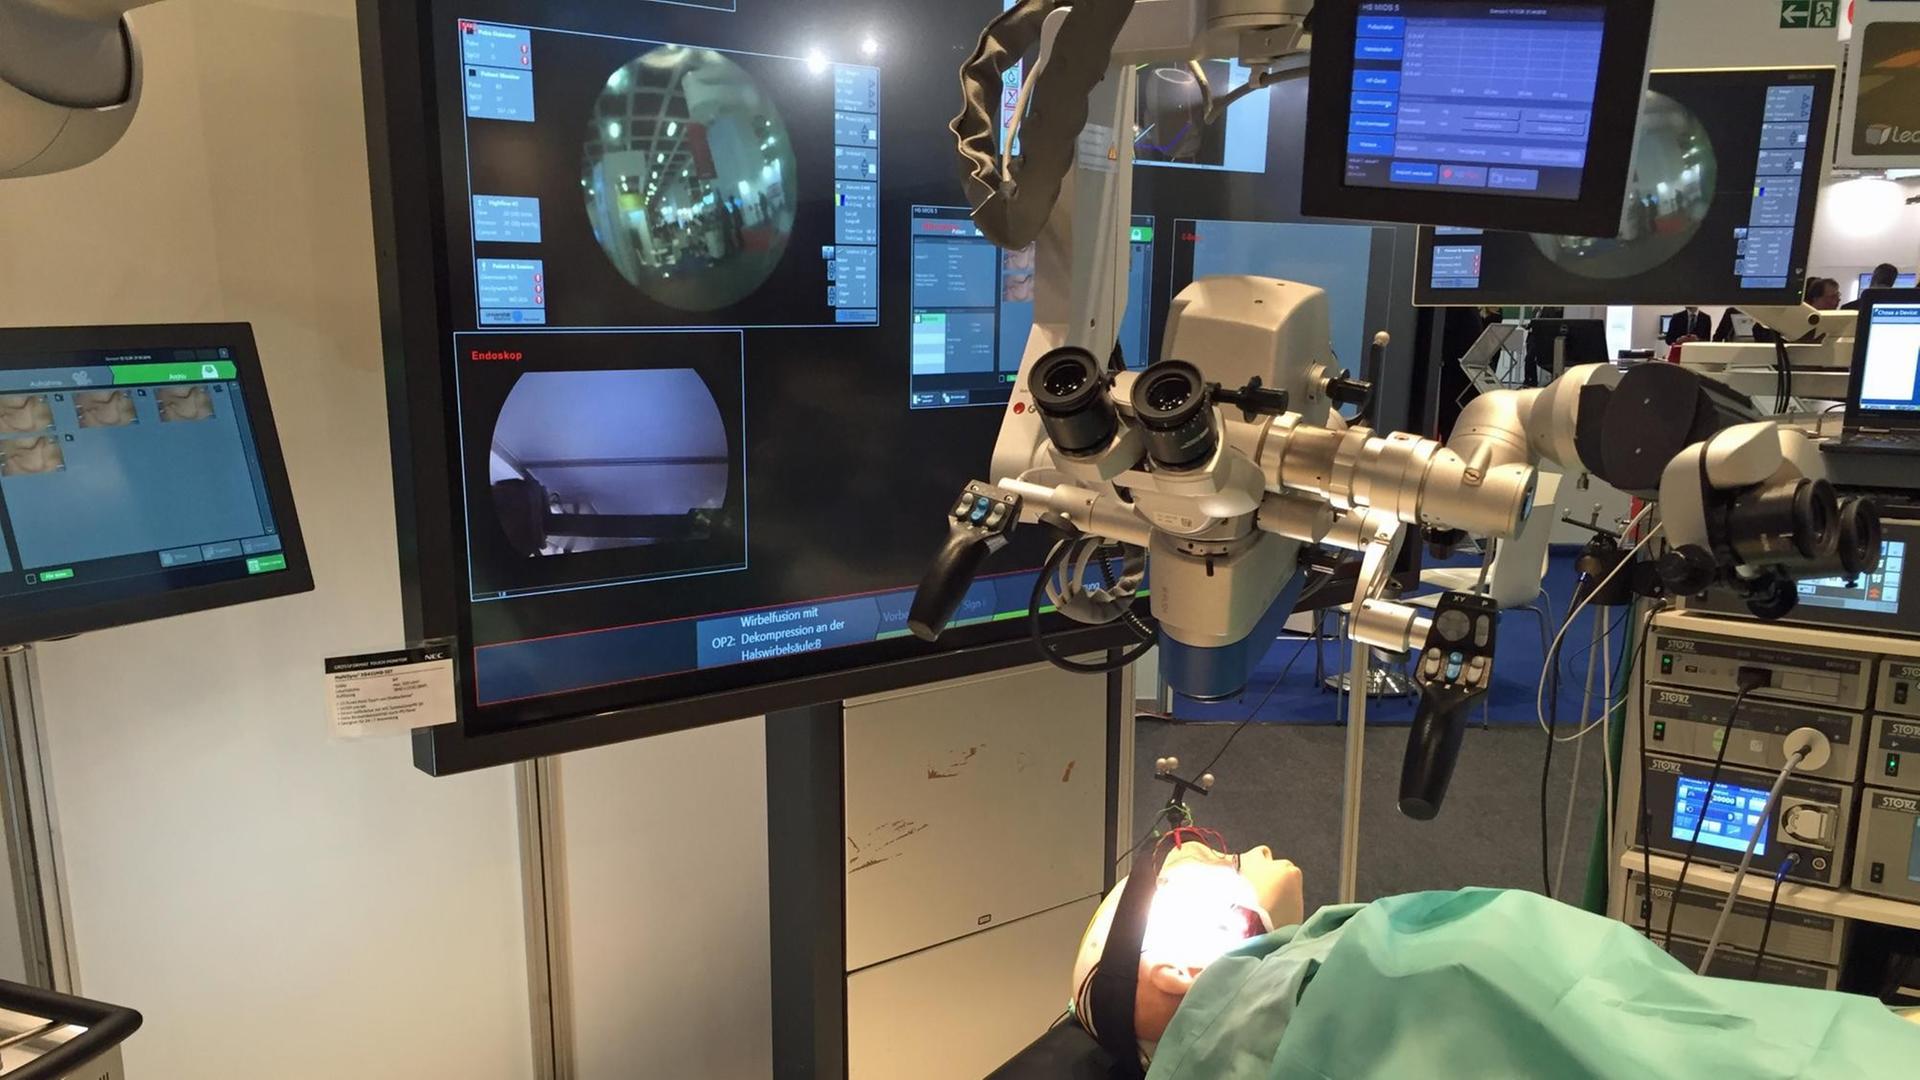 Ein Operationssaal mit diversen Bildschirmen und Mikroskopen, darunter liegt auf einem OP-Tisch ein Dummy.